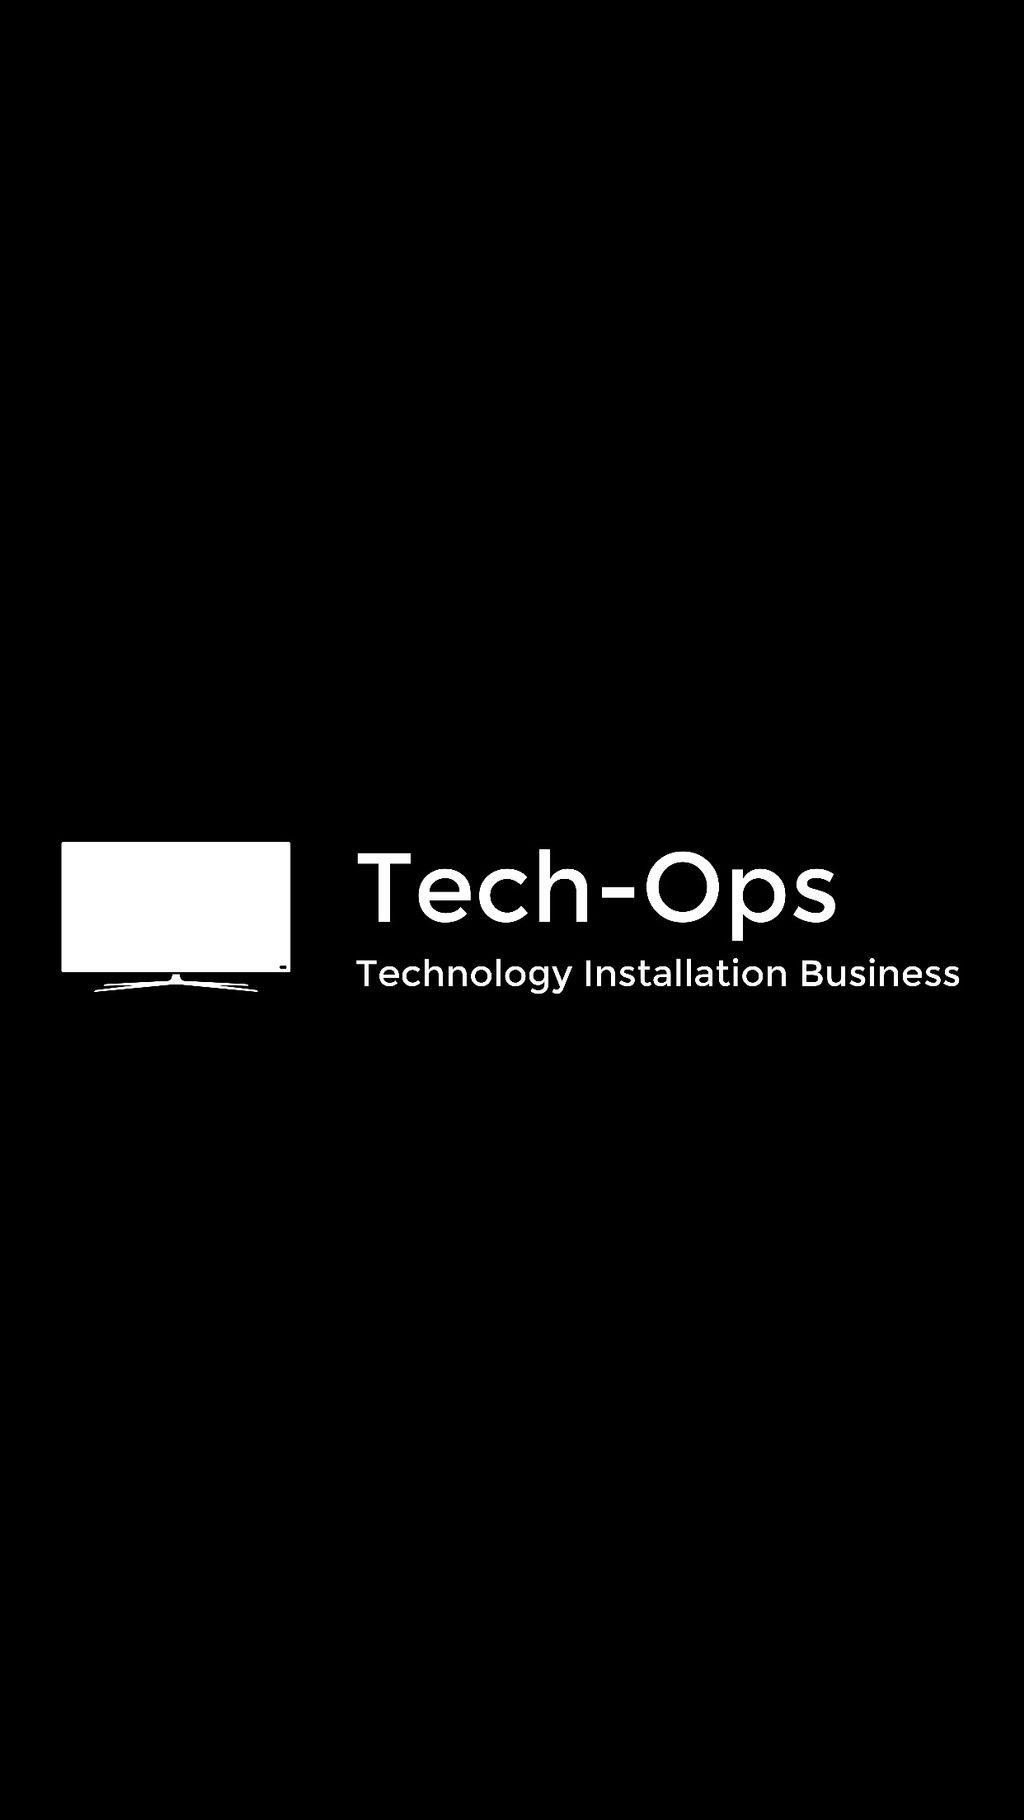 Tech-Ops